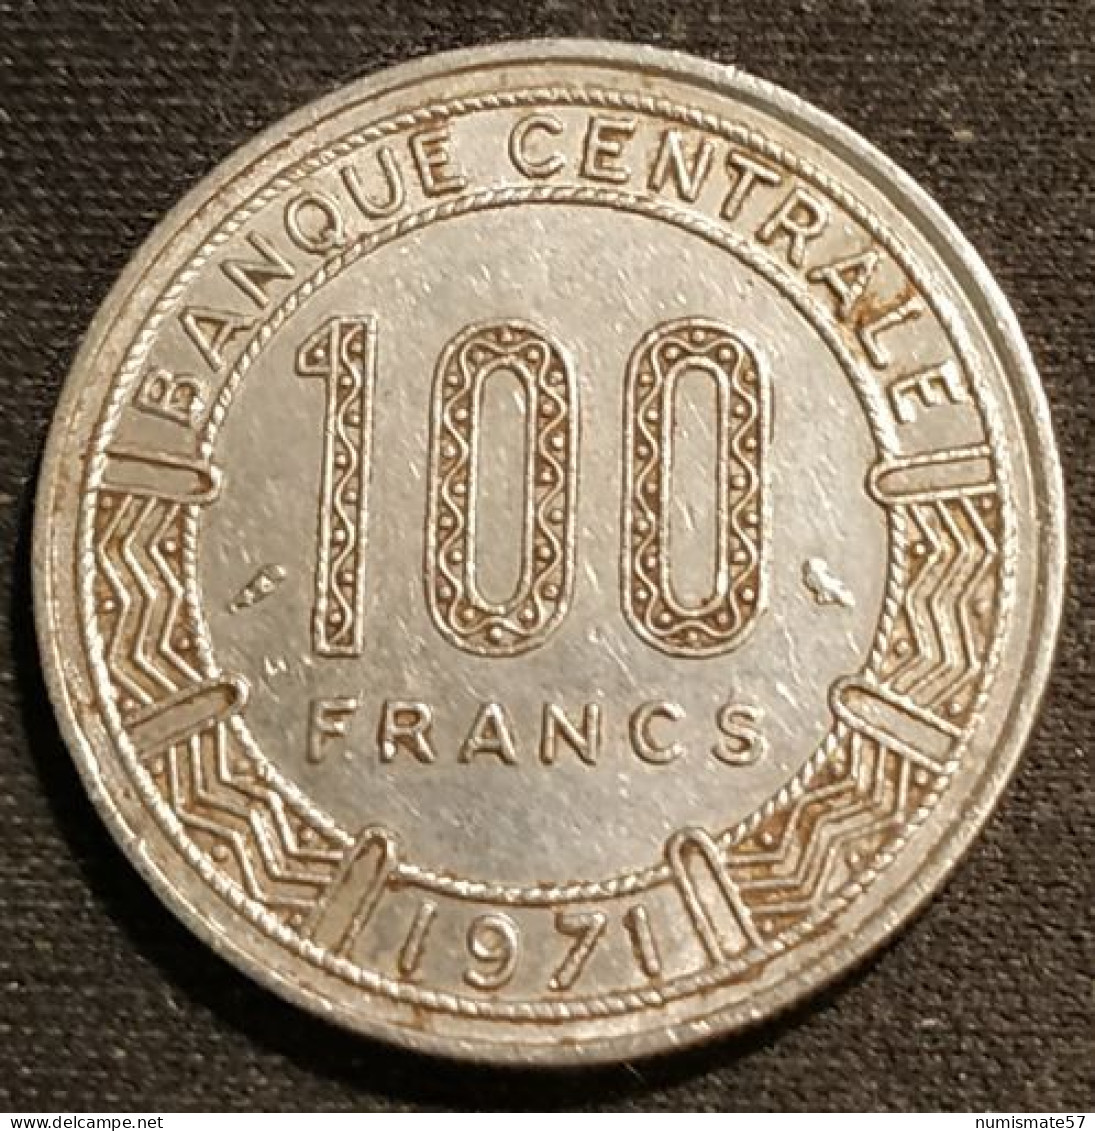 CAMEROUN - 100 FRANCS 1971 - KM 15 - Cameroun